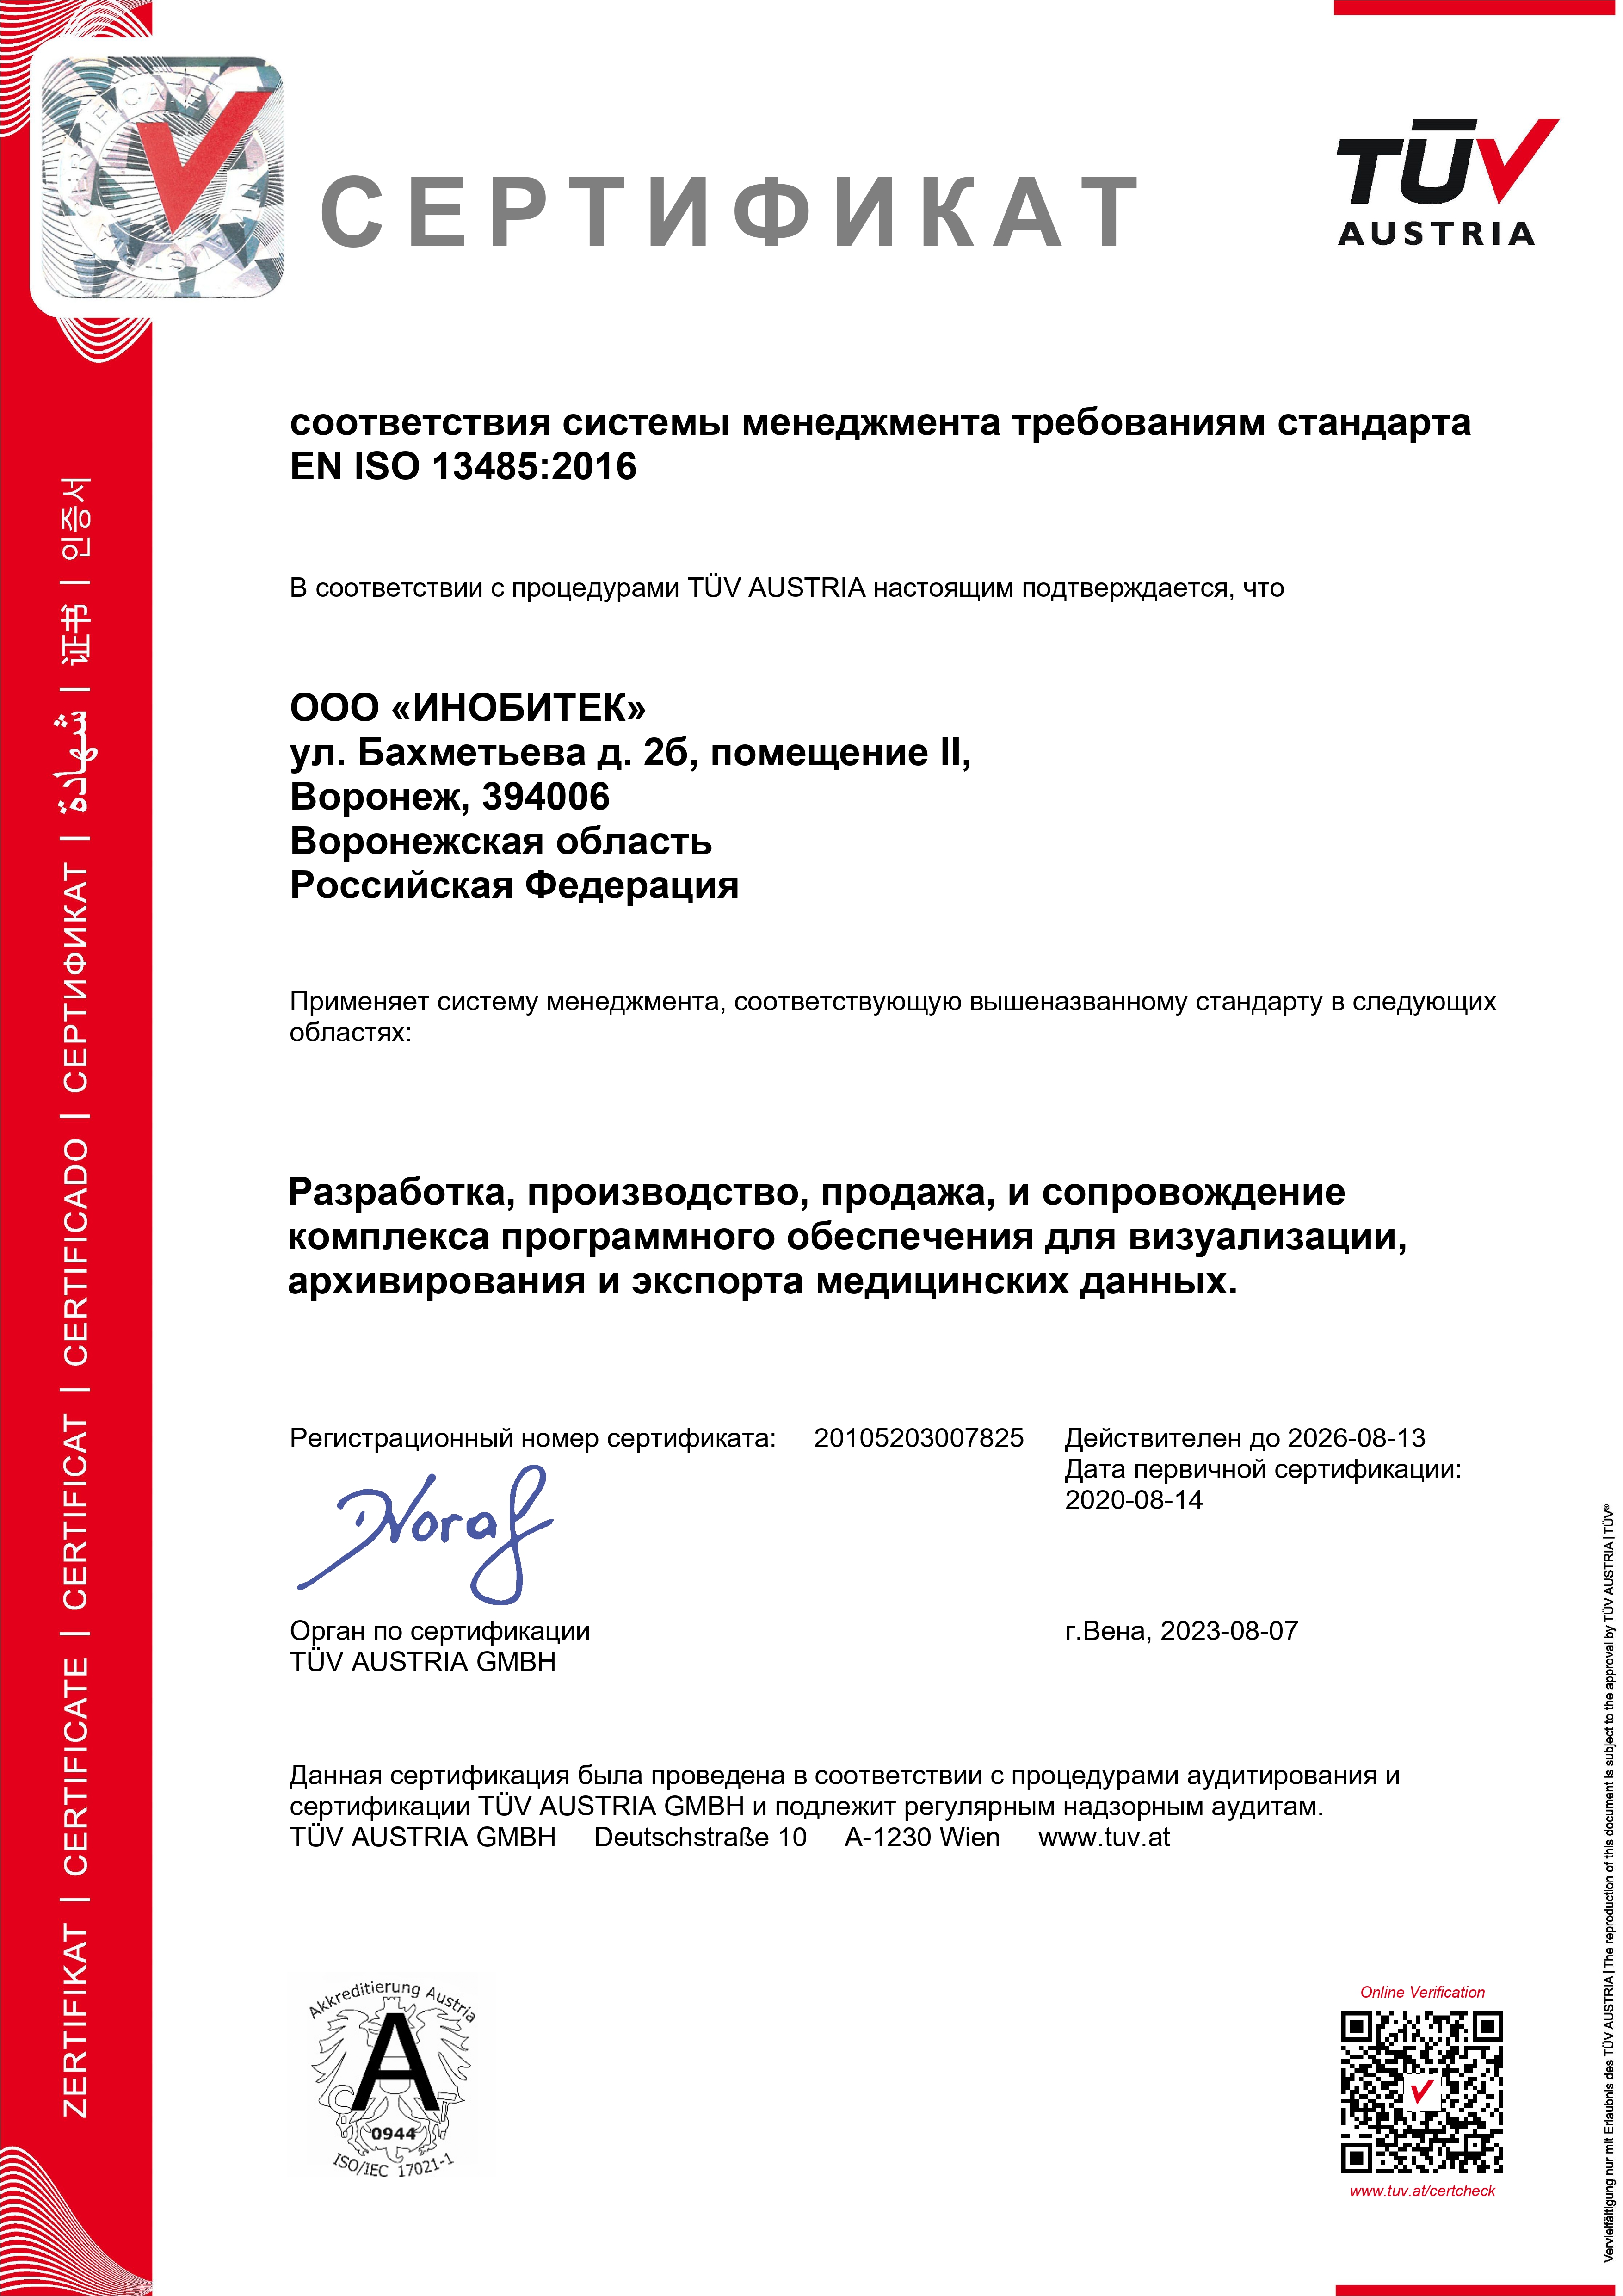 Сертификат соответствия системы менеджмента требованиям стандарта EN ISO 13485:2016